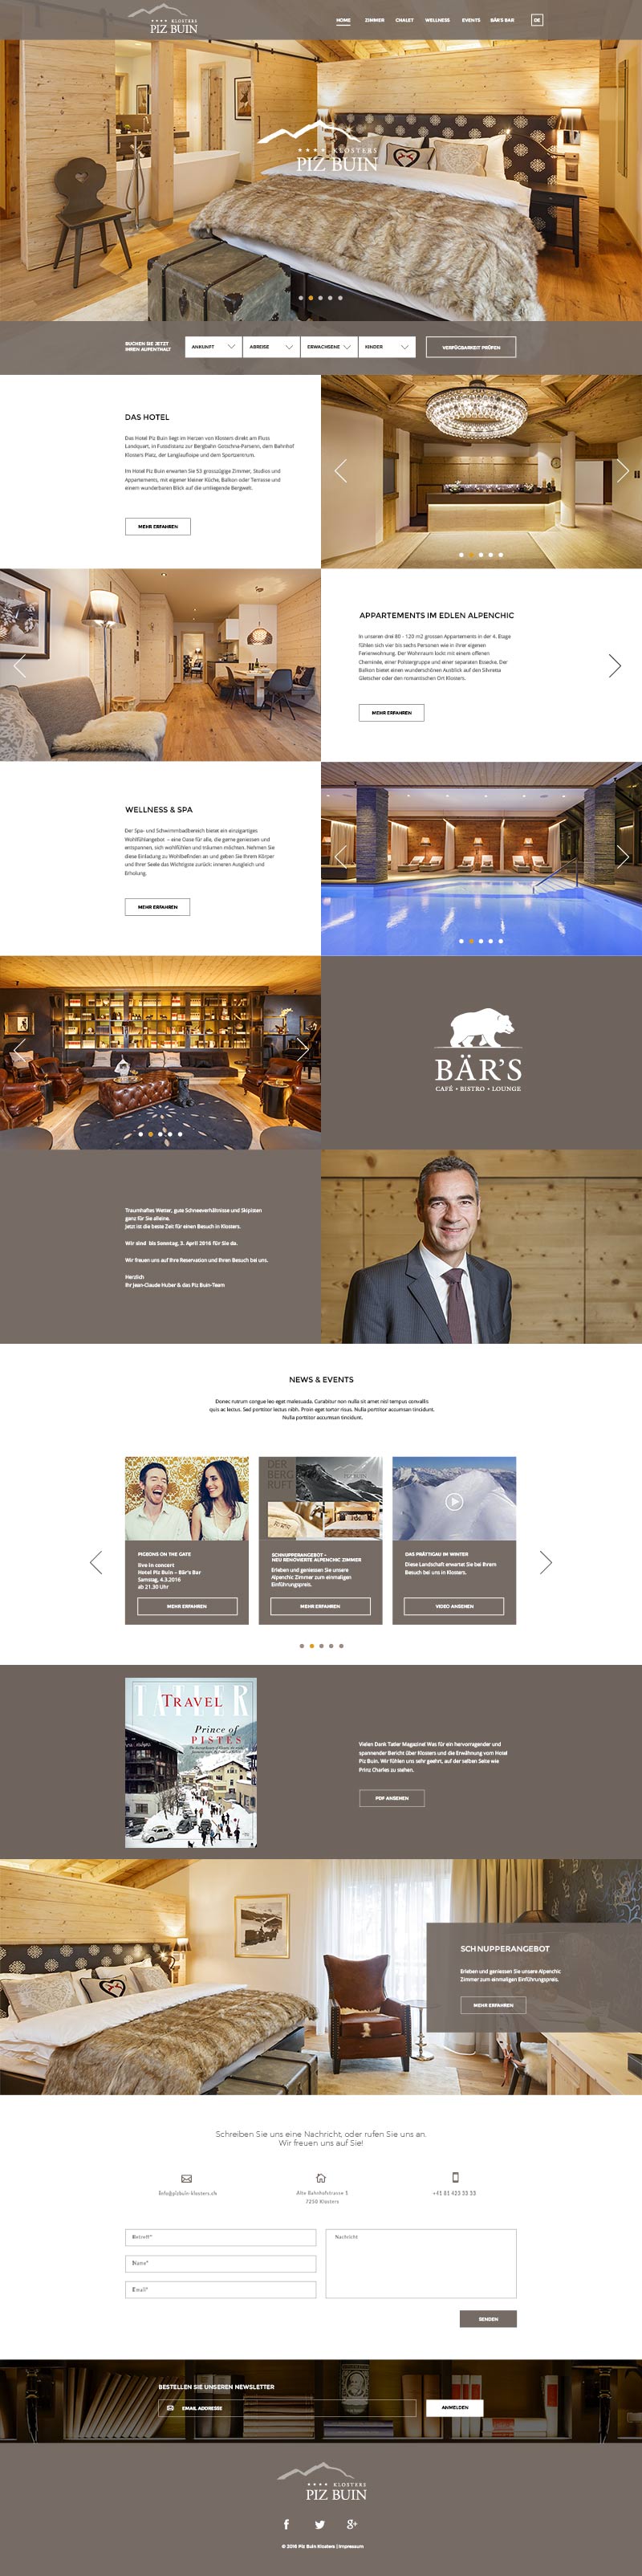 Übersicht der Homepage der Webseite für das Hotel Piz Buin Klosters. Das Design-Konzept wurde auch bei anderen Hotels der Meili Selection AG angewendet.